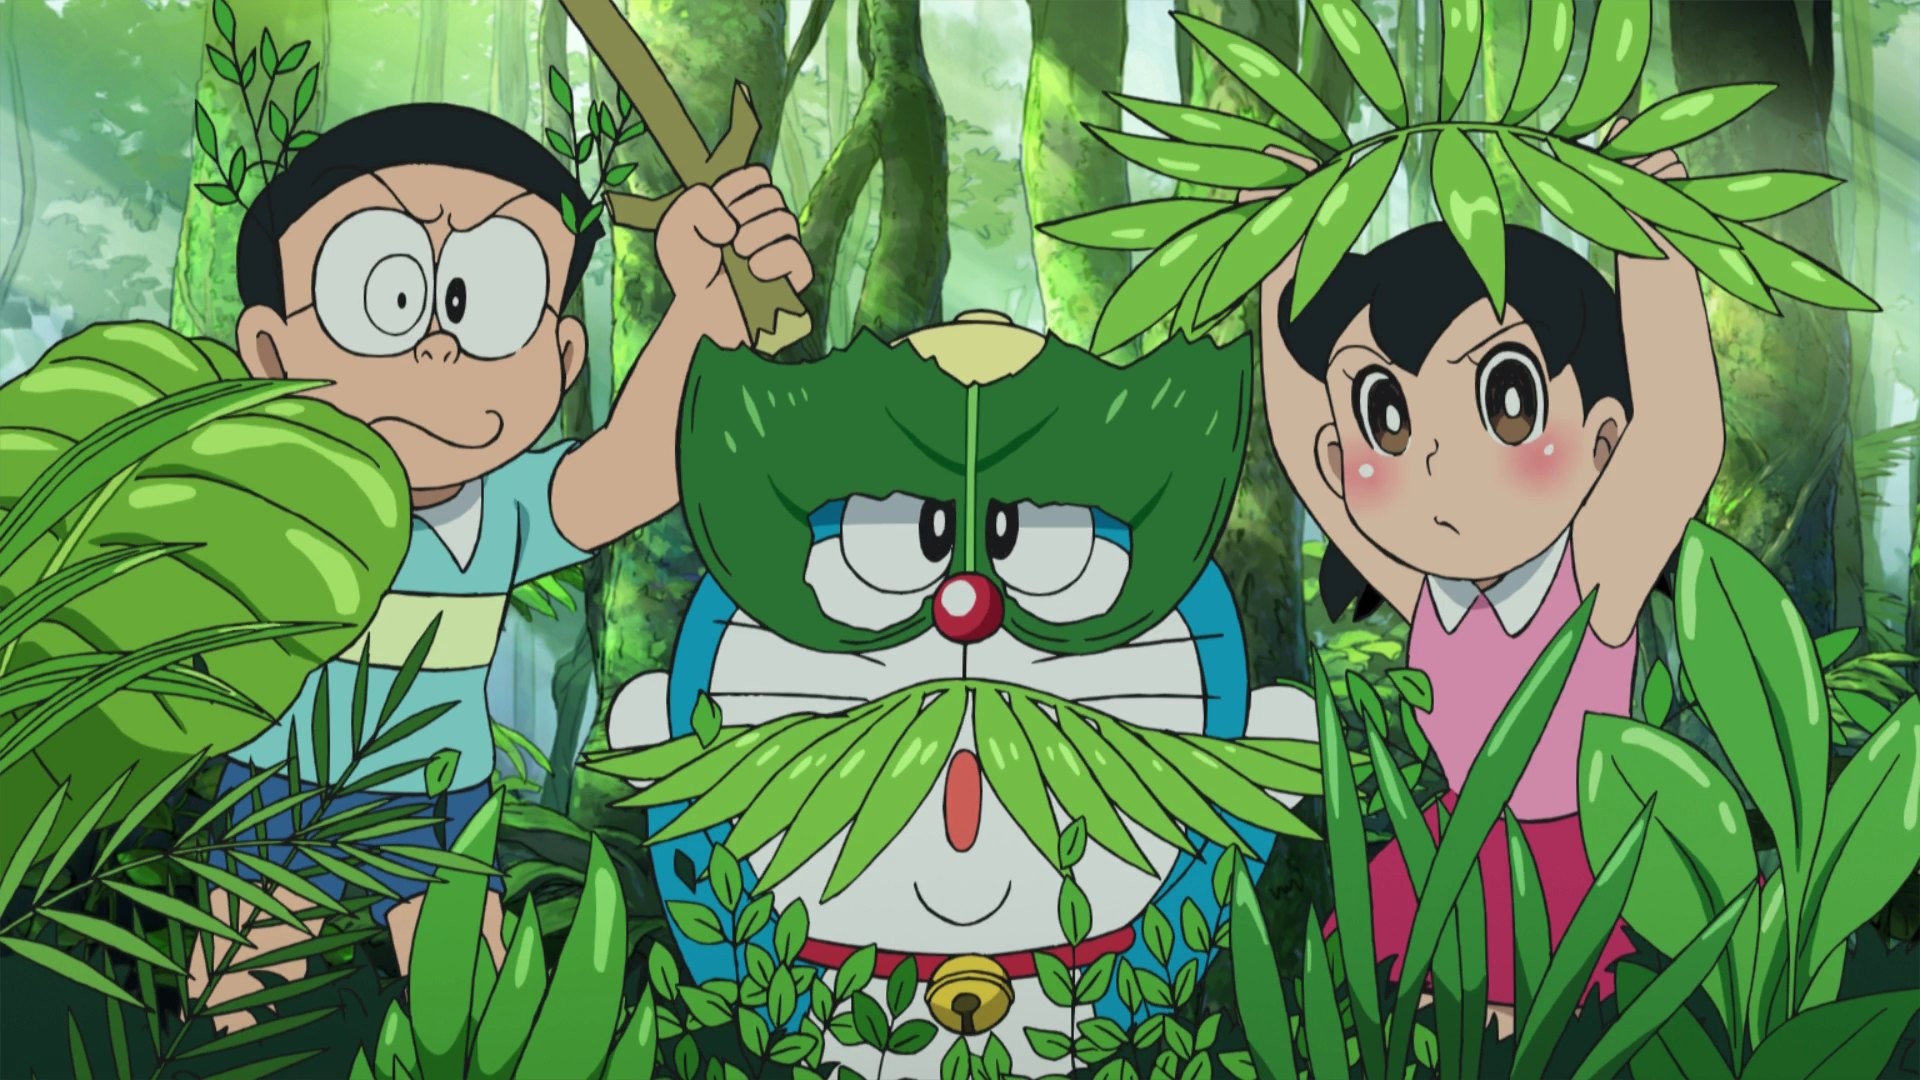 Hình nền Doraemon và bạn bè: Doraemon luôn có những người bạn thân thiết bên cạnh như Nobita, Shizuka, Suneo và Gian. Hình nền Doraemon và bạn bè sẽ đem lại cho bạn không gian vui tươi, hạnh phúc và ấm áp. Xem ngay hình ảnh về Doraemon và bạn bè để trở thành người hâm mộ cuồng nhiệt của bộ truyện tranh nổi tiếng này.